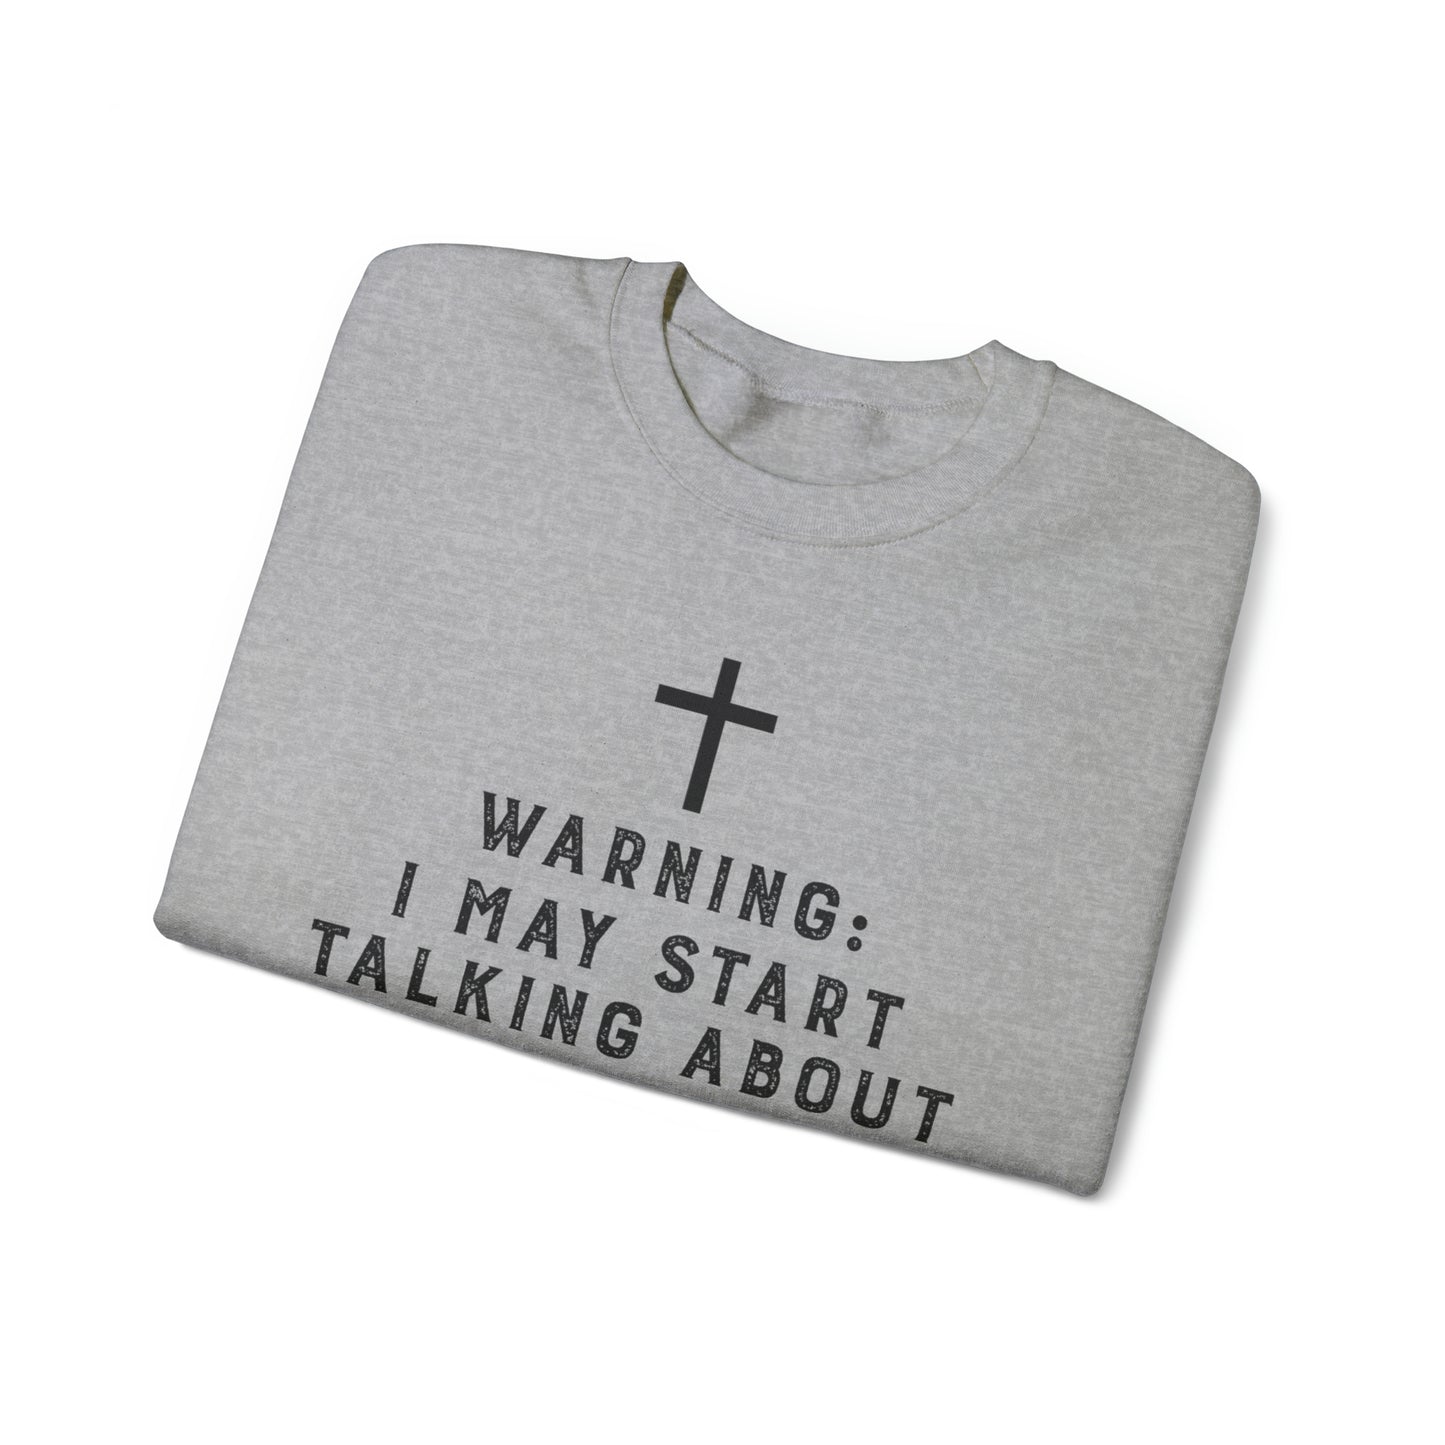 Warning I May Start Talking About Jesus Sweatshirt